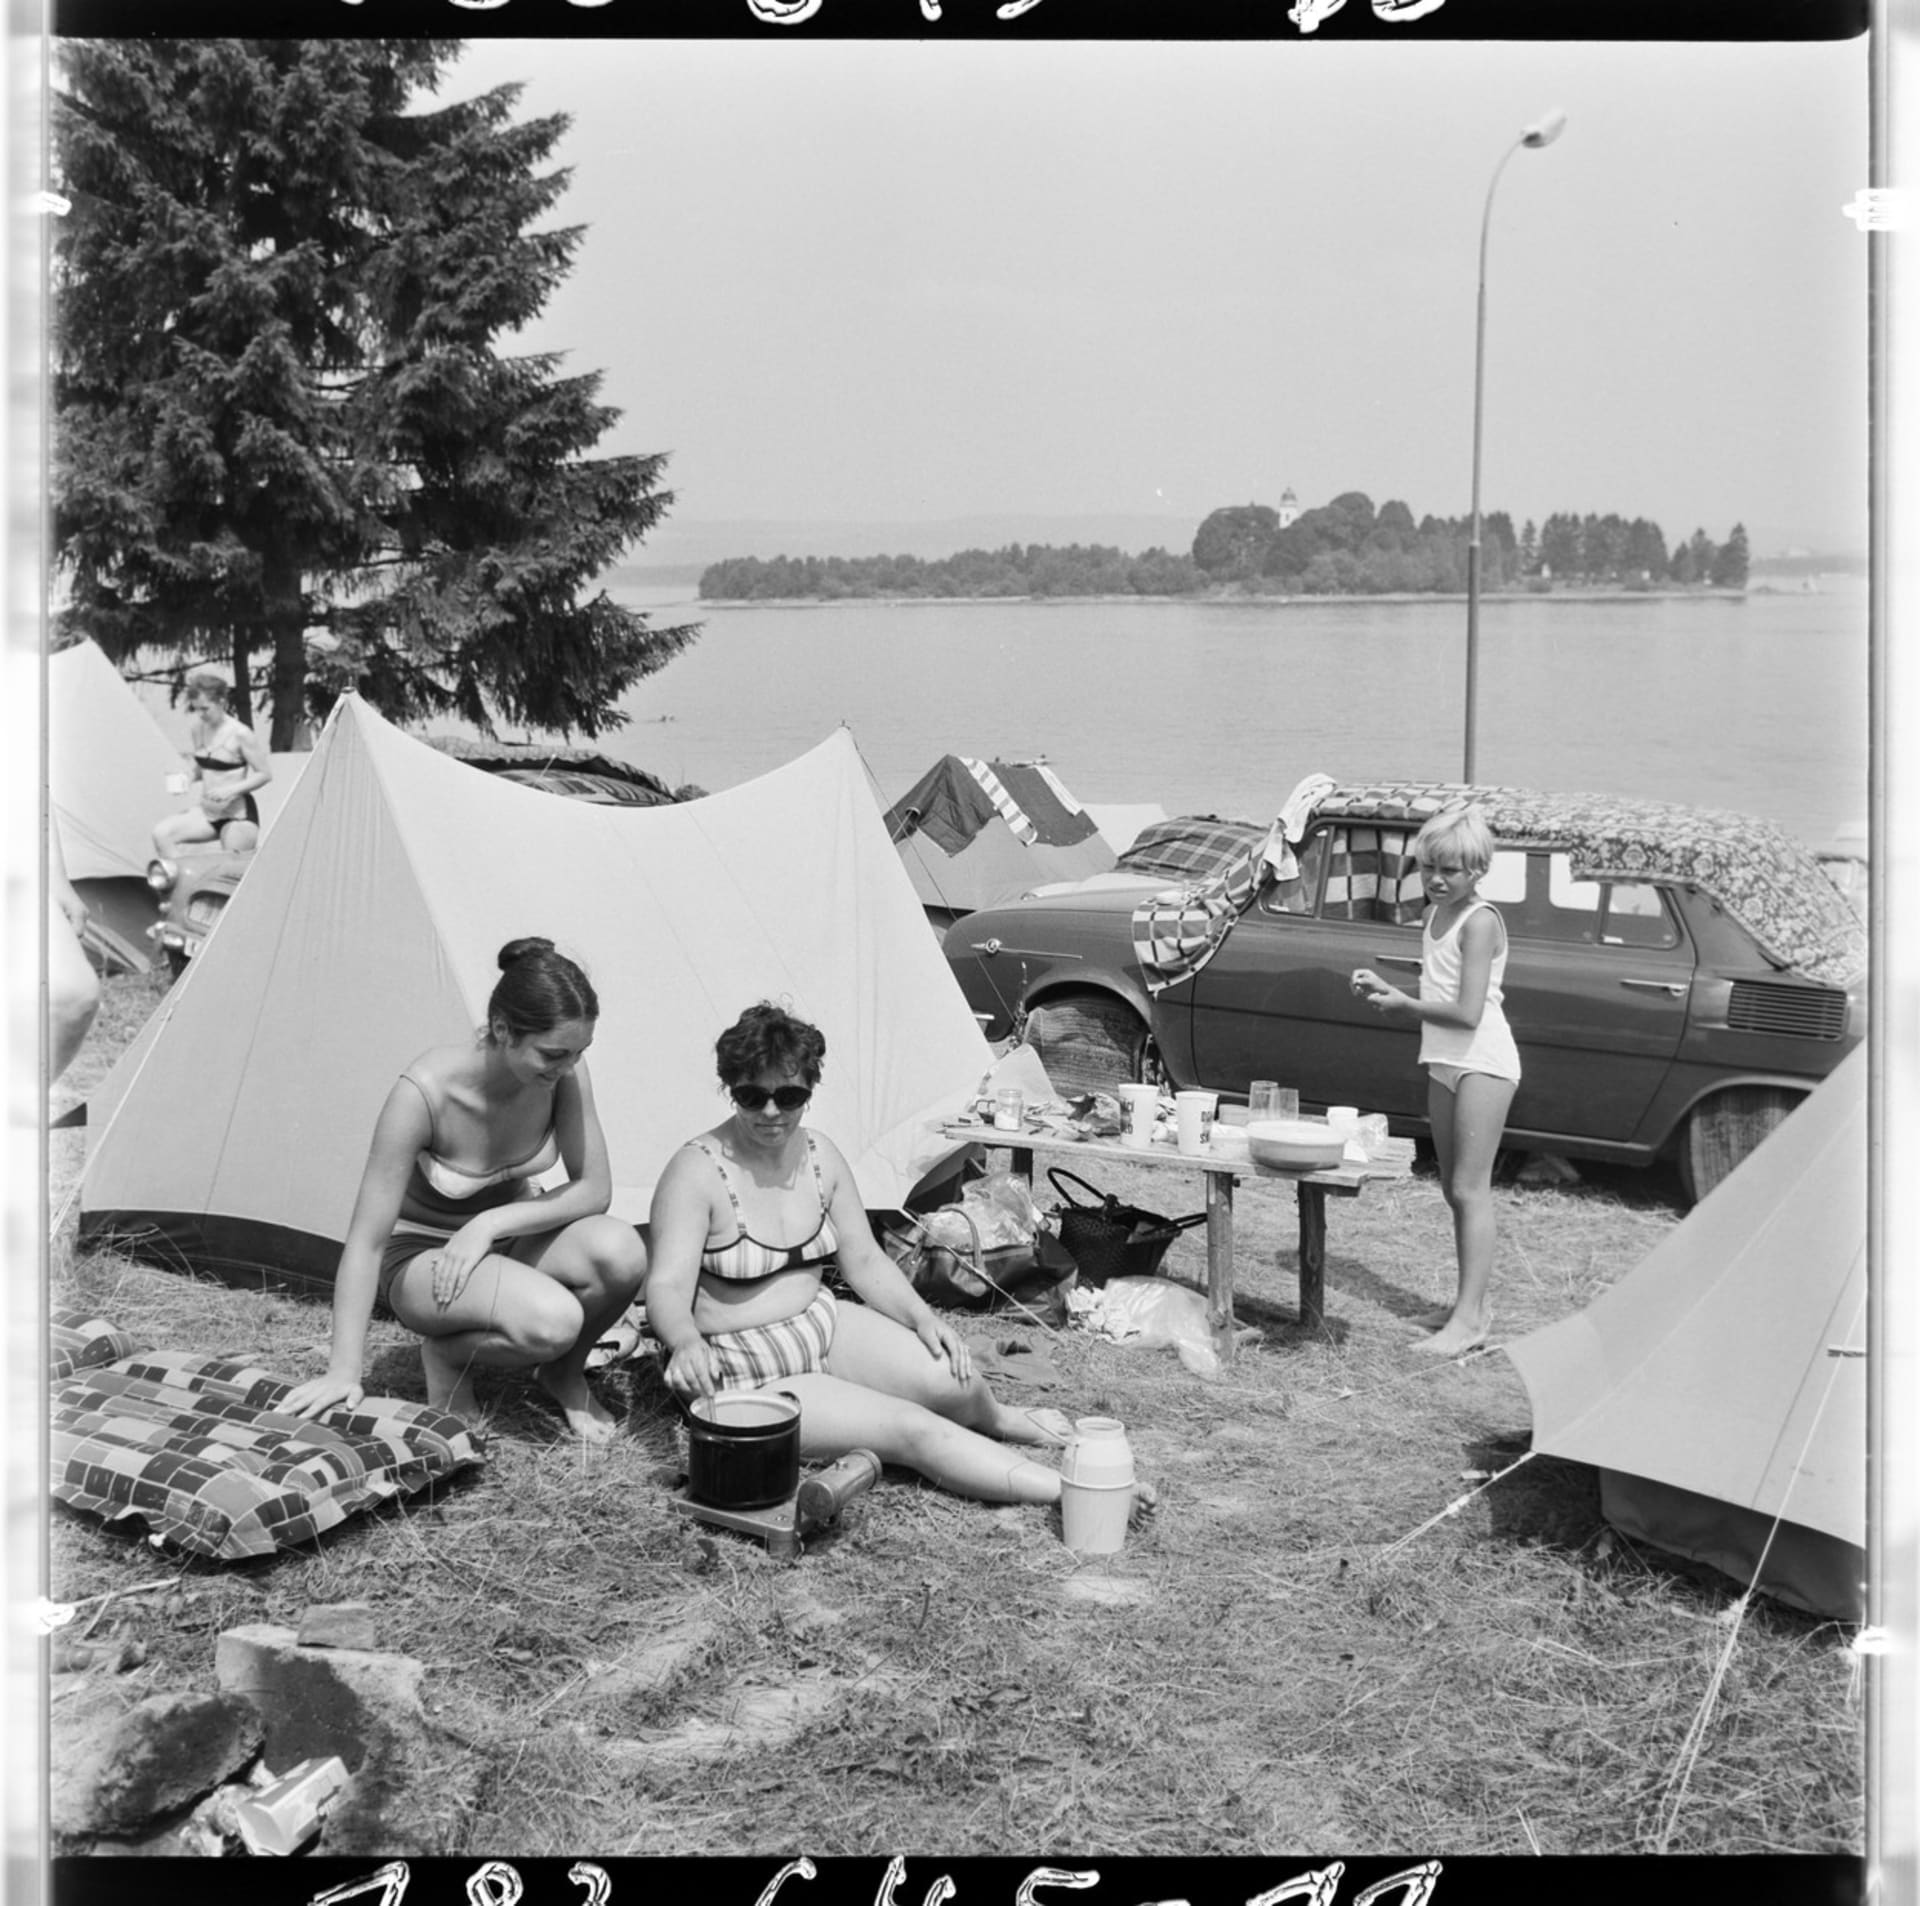 Zavedením volných sobot v září 1968 se najednou rodinám vyplatil i víkend někde u přehrady. Na snímku autokemp u vodní nádrže Orava, fotografie ČTK z roku 1971